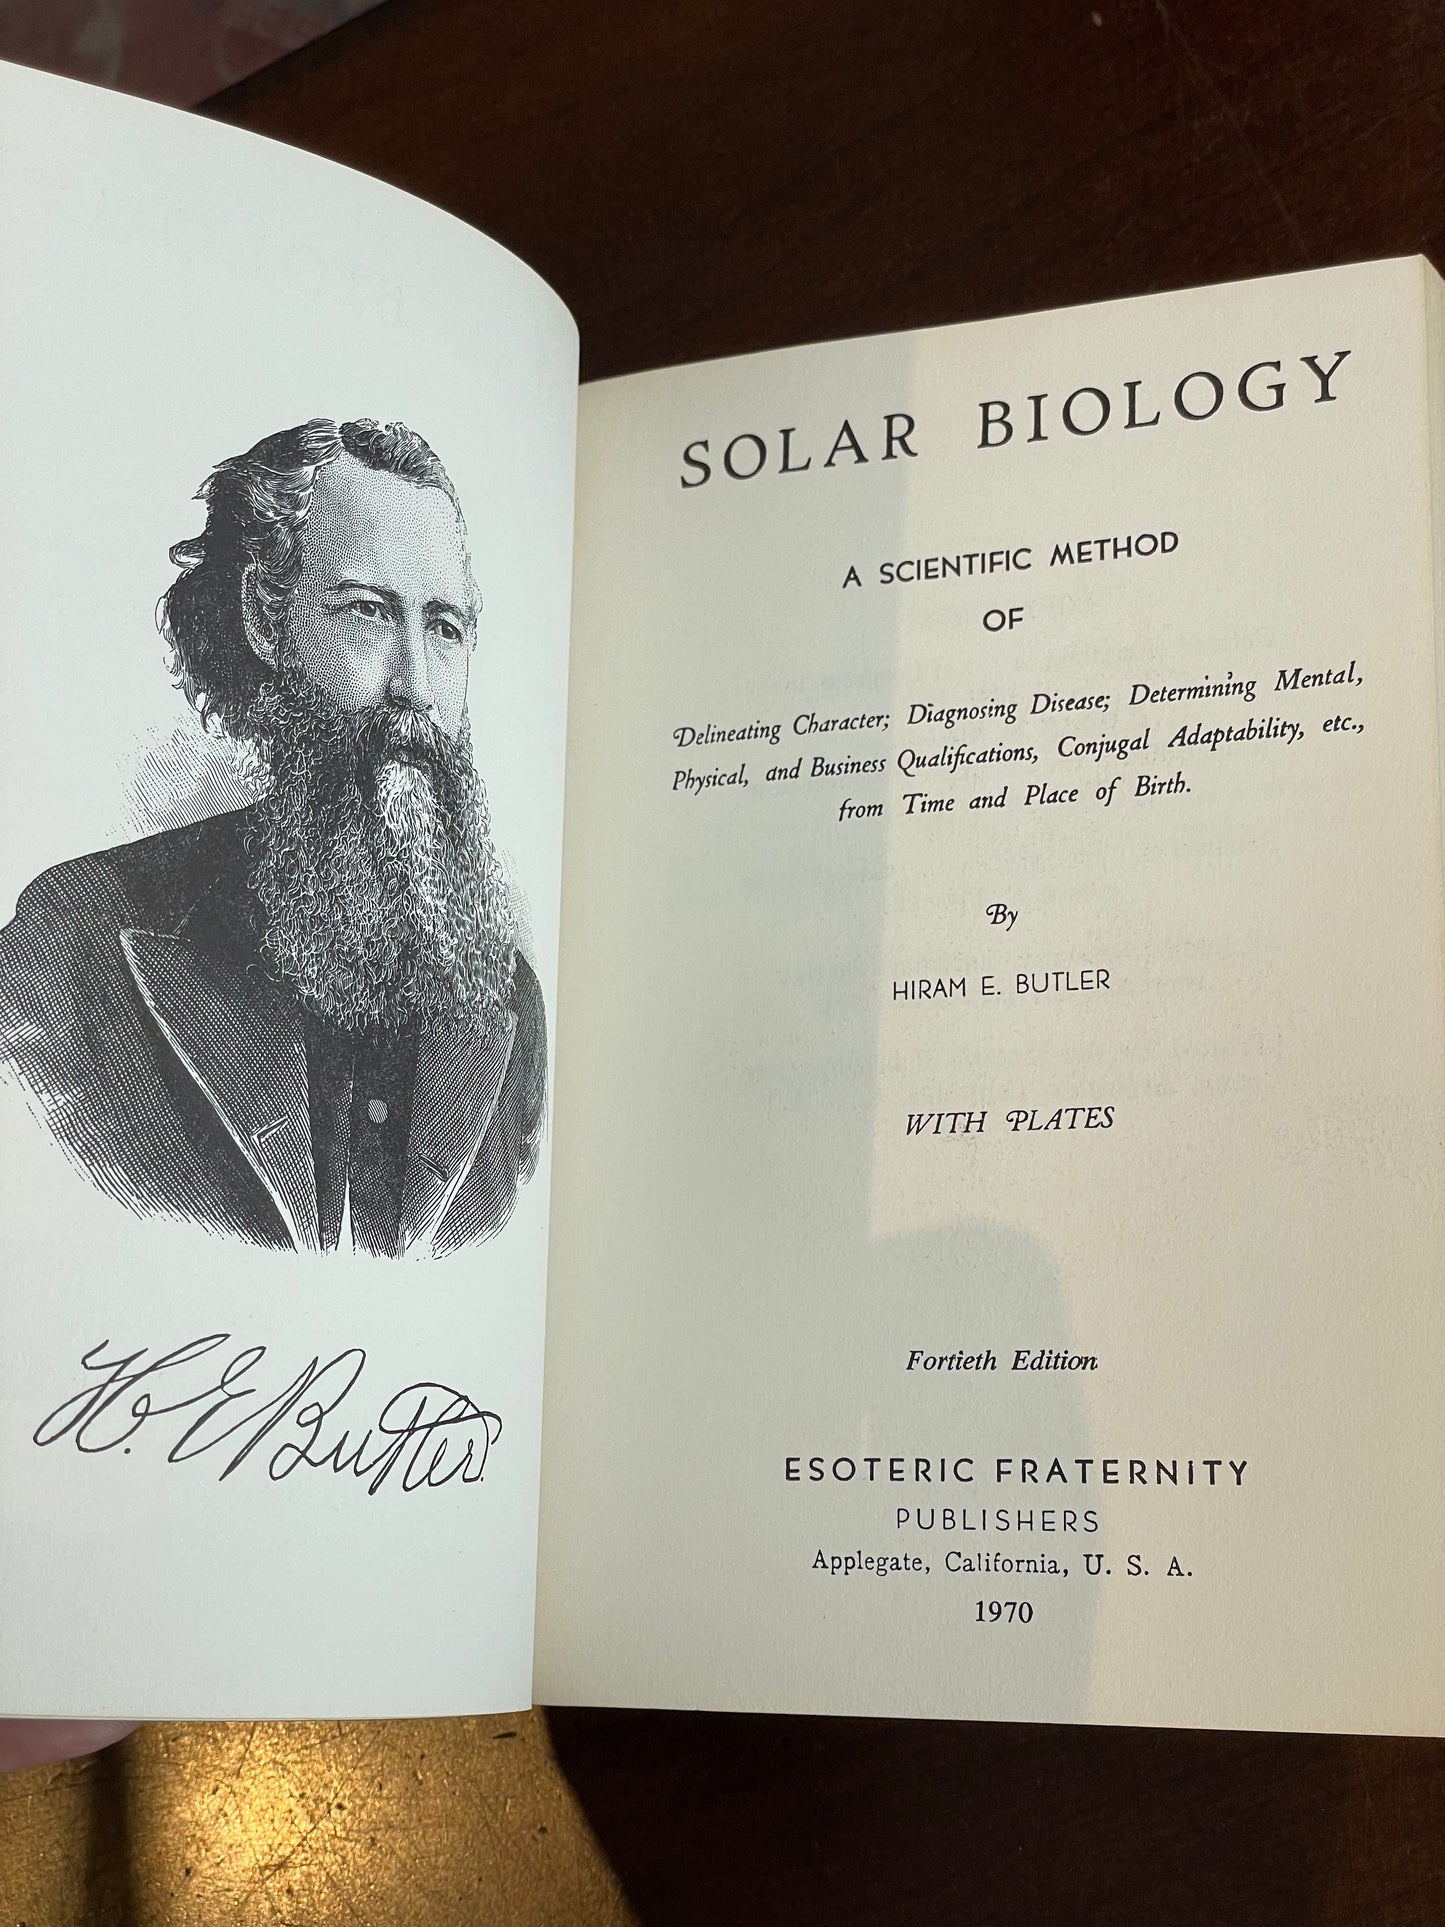 Solar Biology by Hiram E. Butler